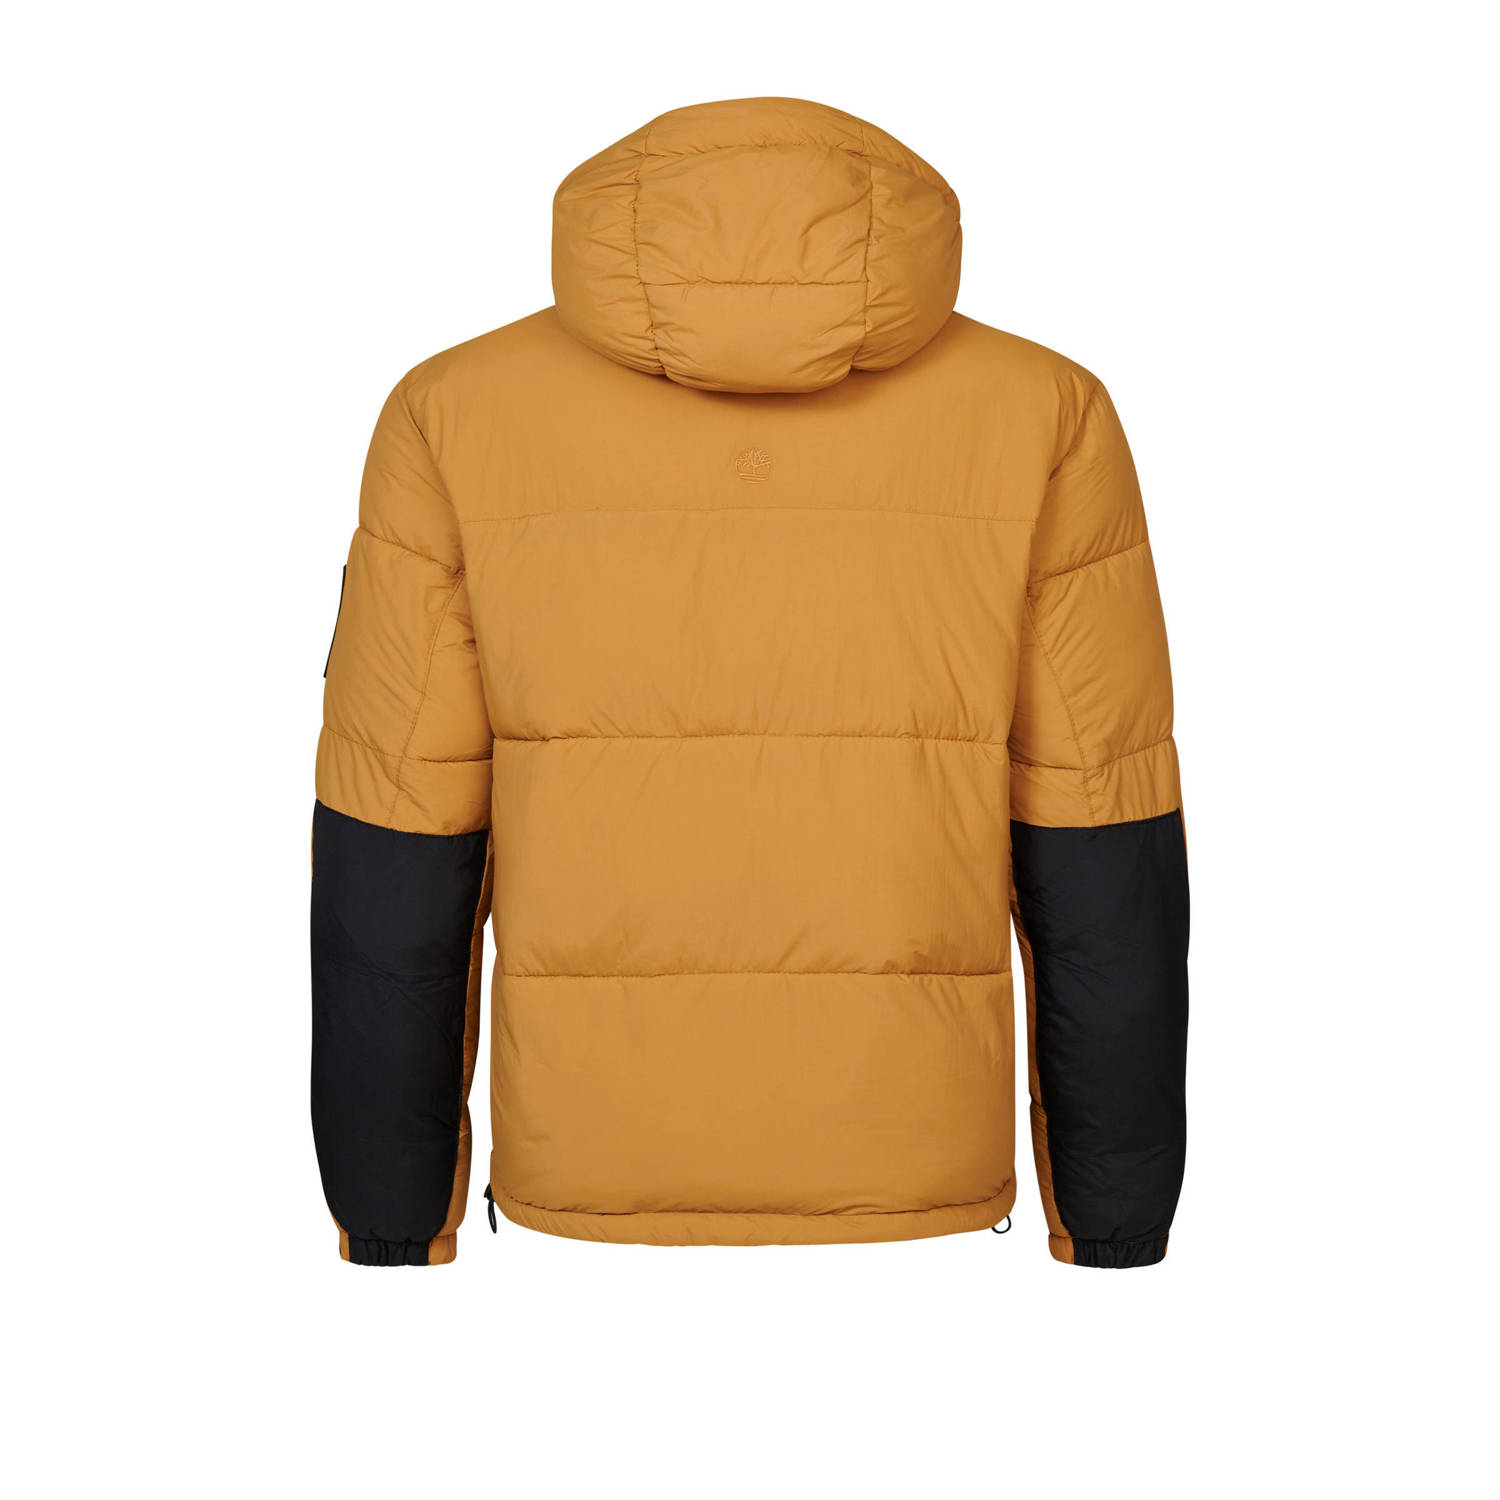 Timberland gewatteerde jas met logo en patches geel multi